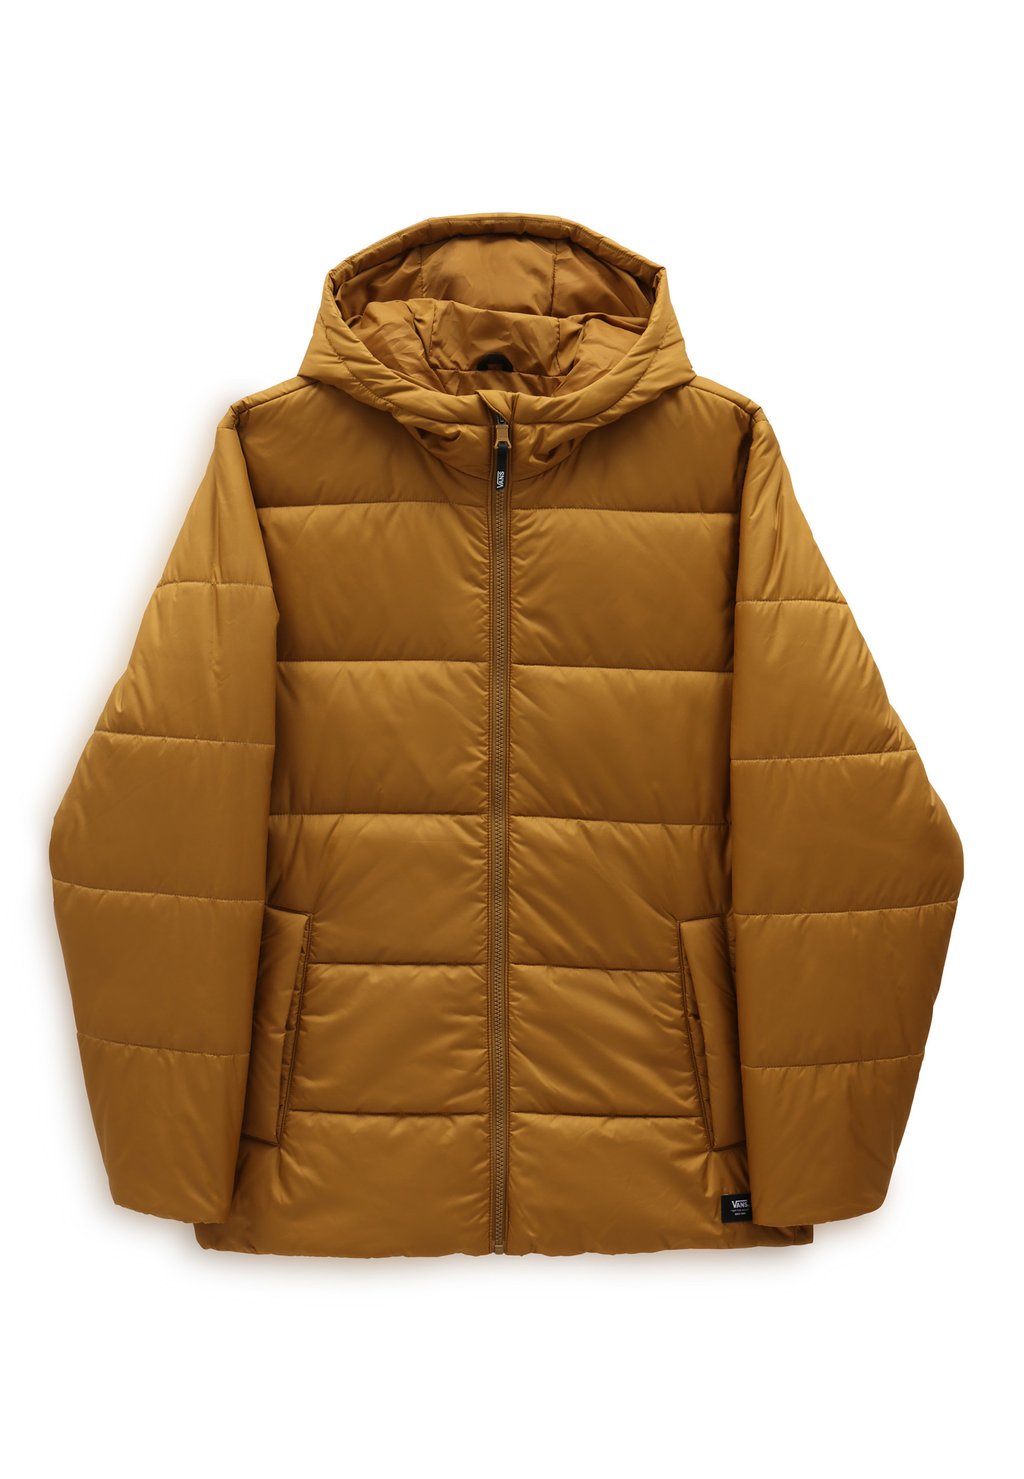 Зимняя куртка Norris Mte Puffer Vans, цвет golden brown куртка vans prospect mte 1 puffer цвет oatmeal dress blues